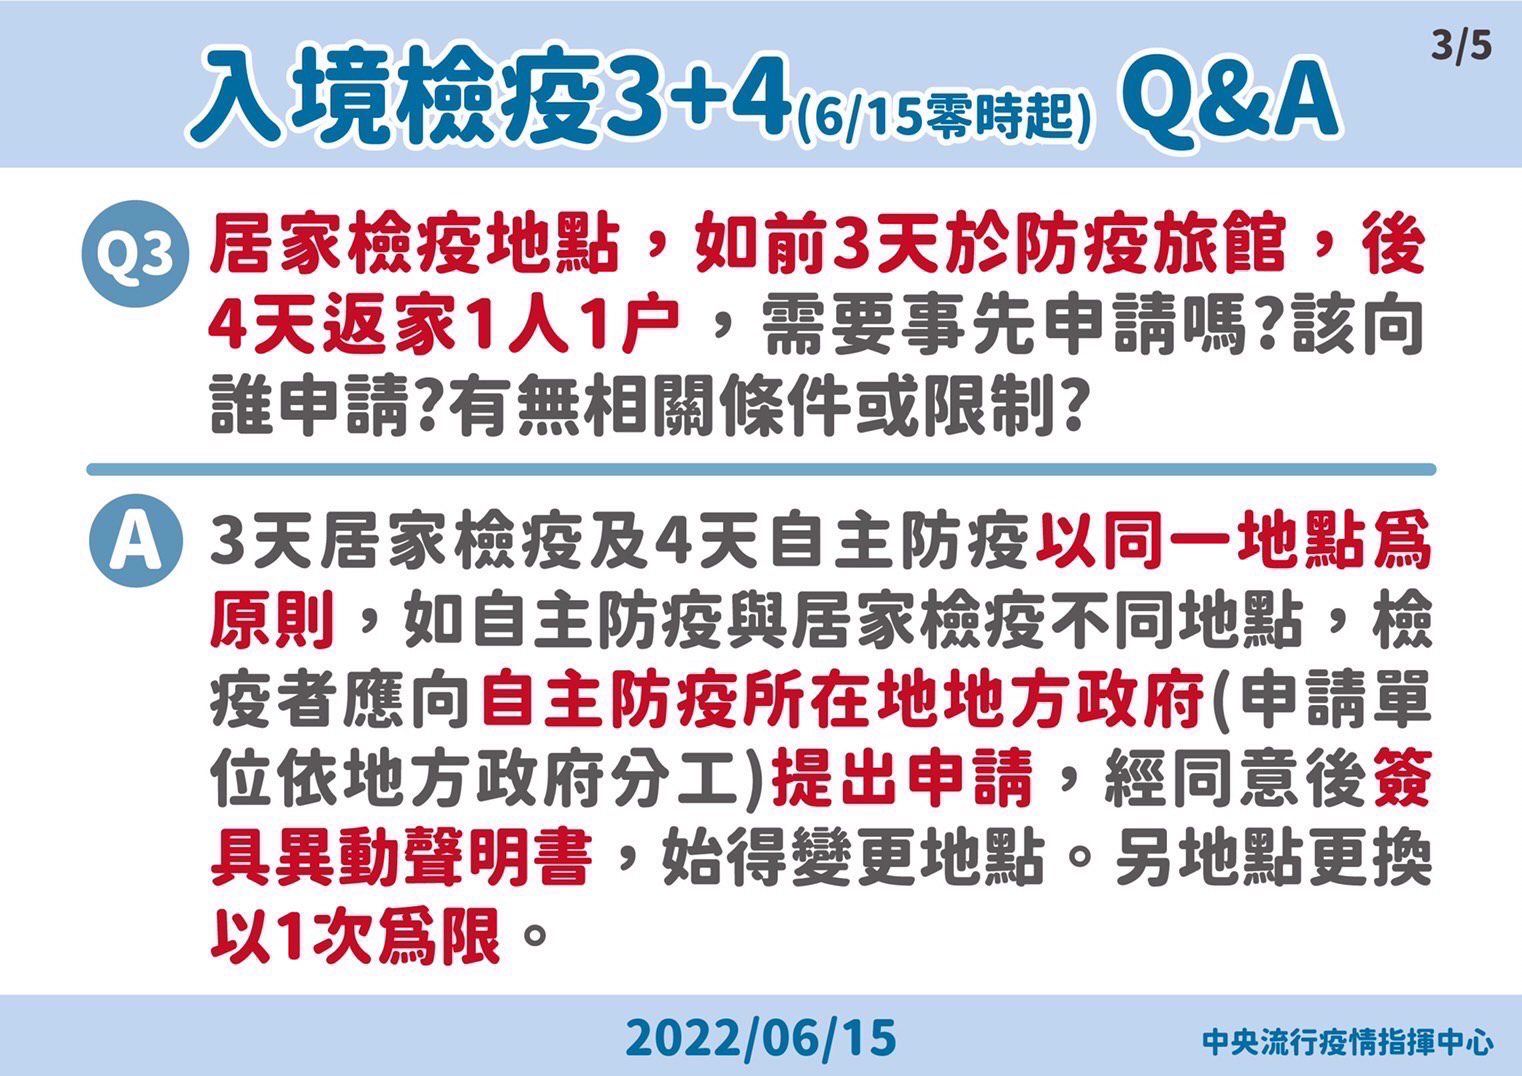 台南市衛生局針對入境檢疫措施調整為3+4，推出Q&A提醒民眾勿違法被重罰。圖／台南市衛生局提供